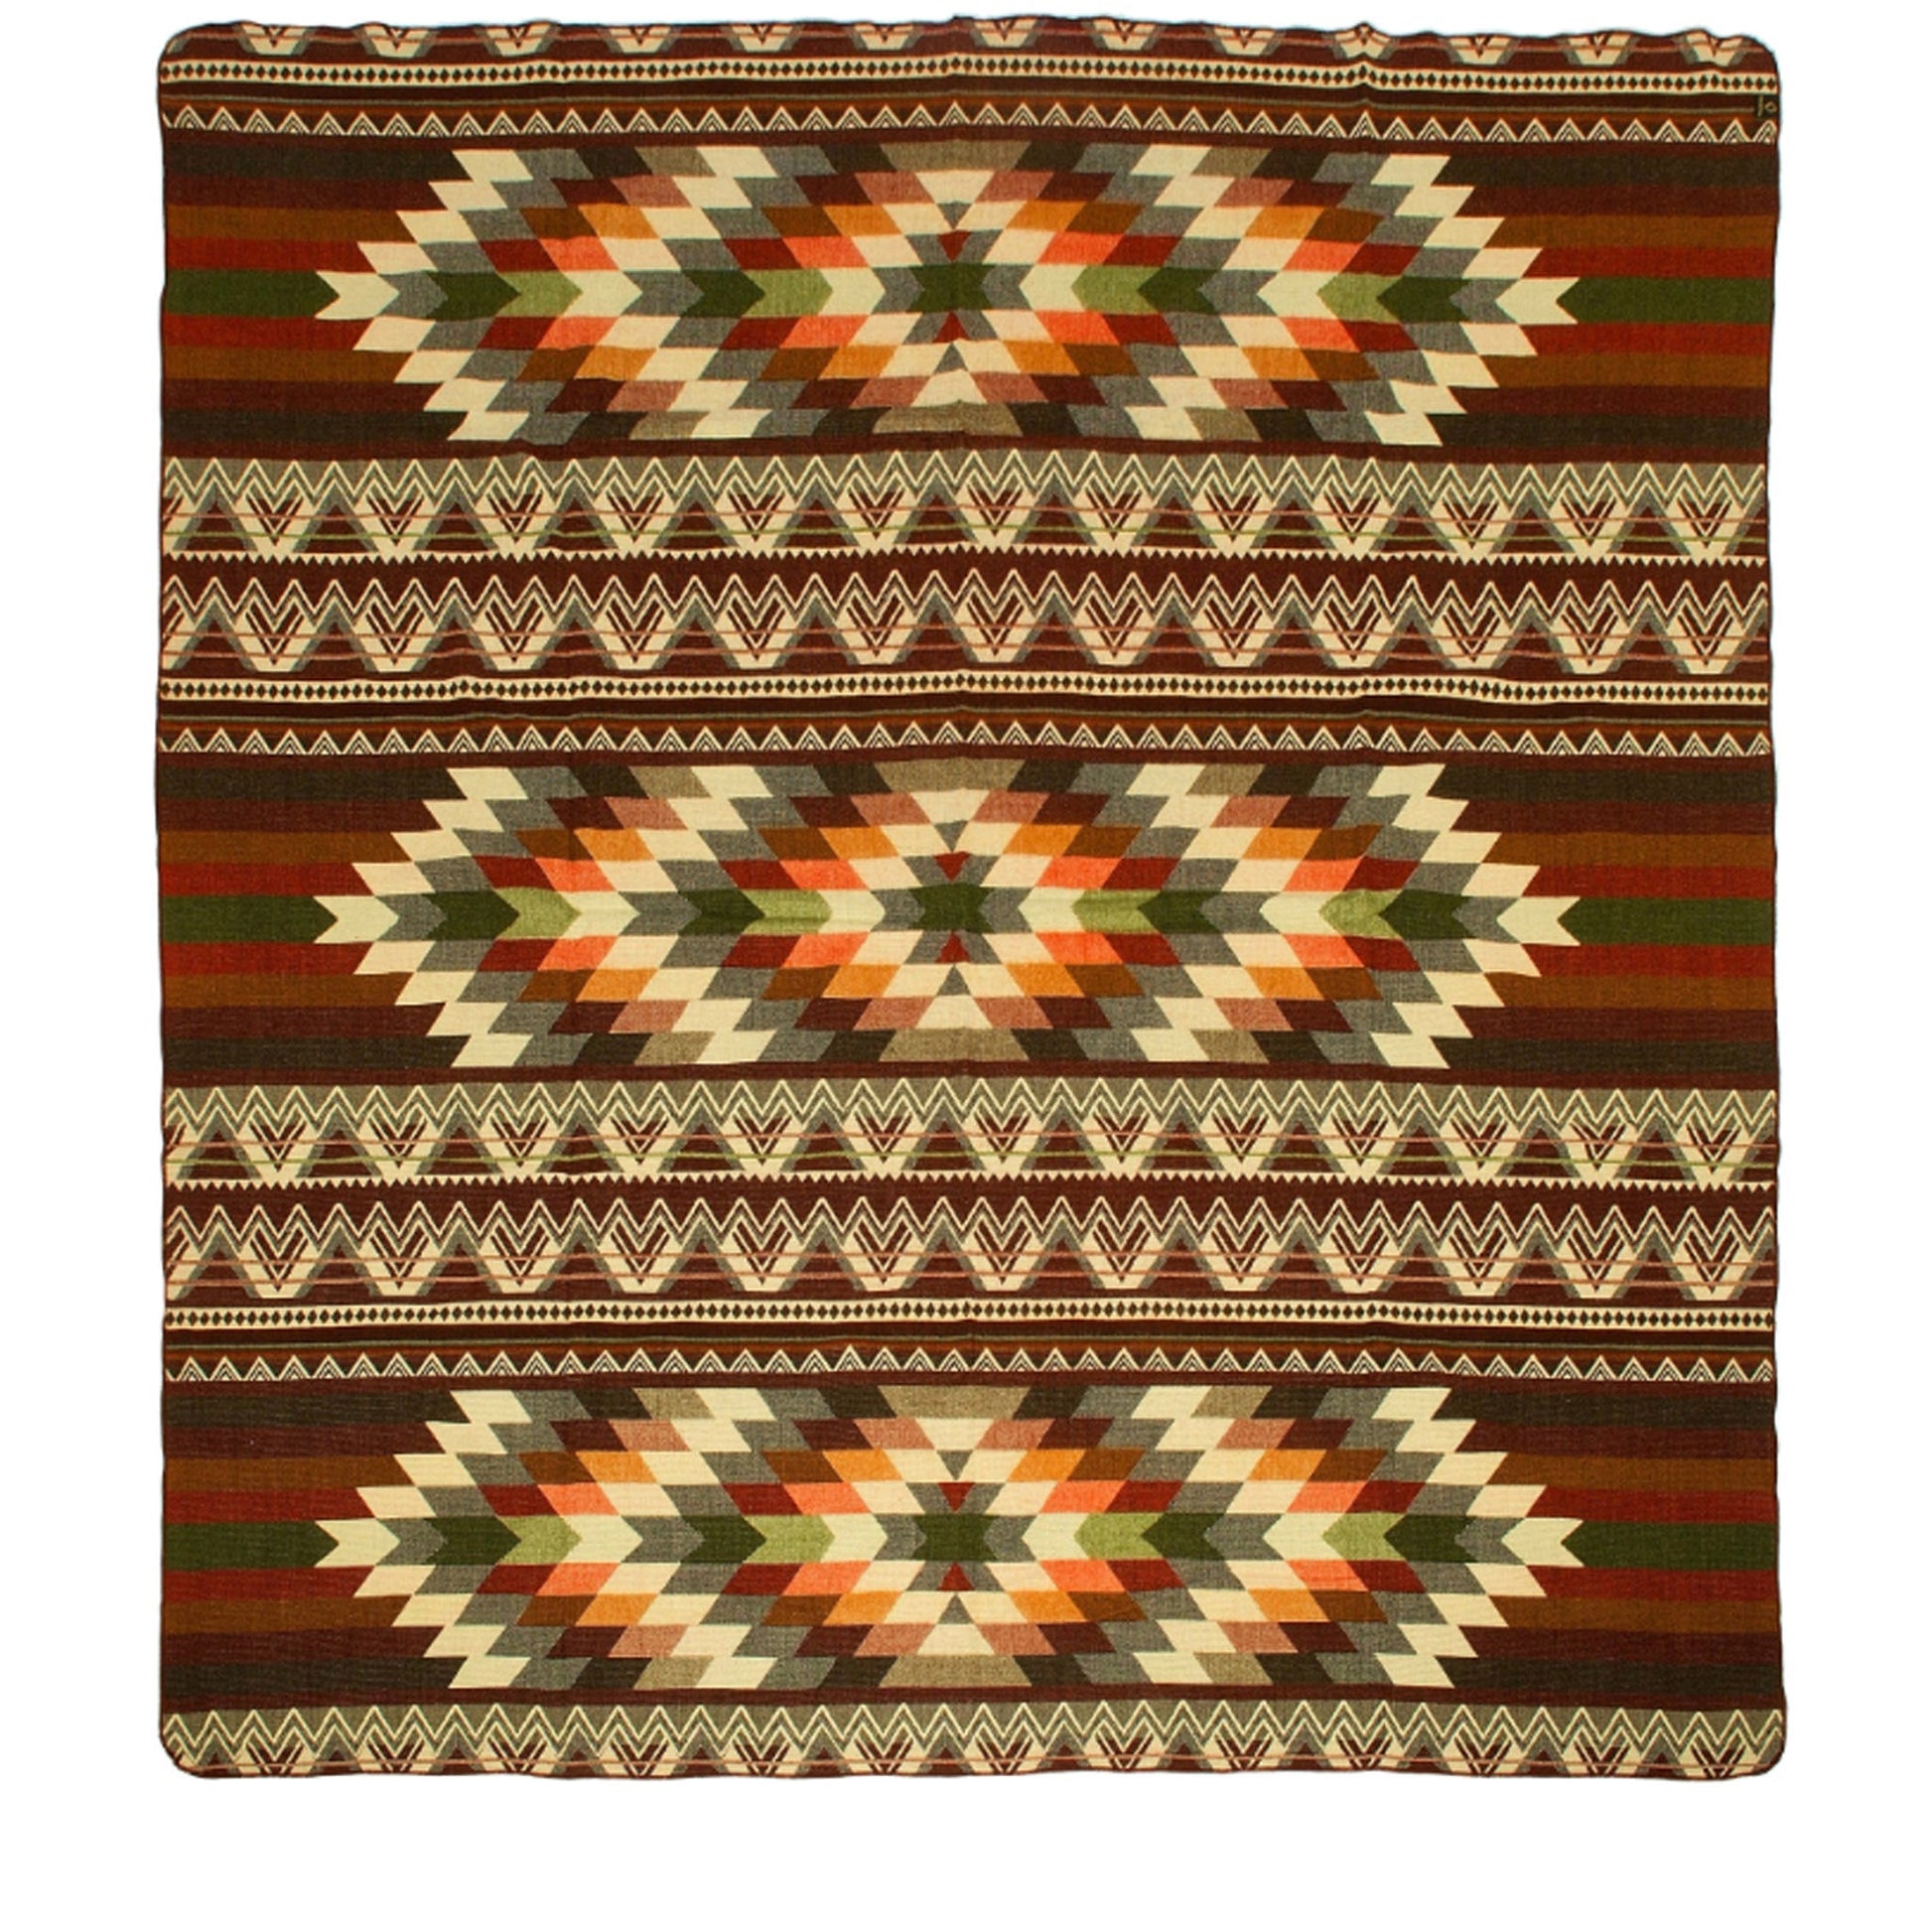 Authentische Decke aus Alpaka Wolle - 200 x 210 cm - Antisana Braun - Vandeley